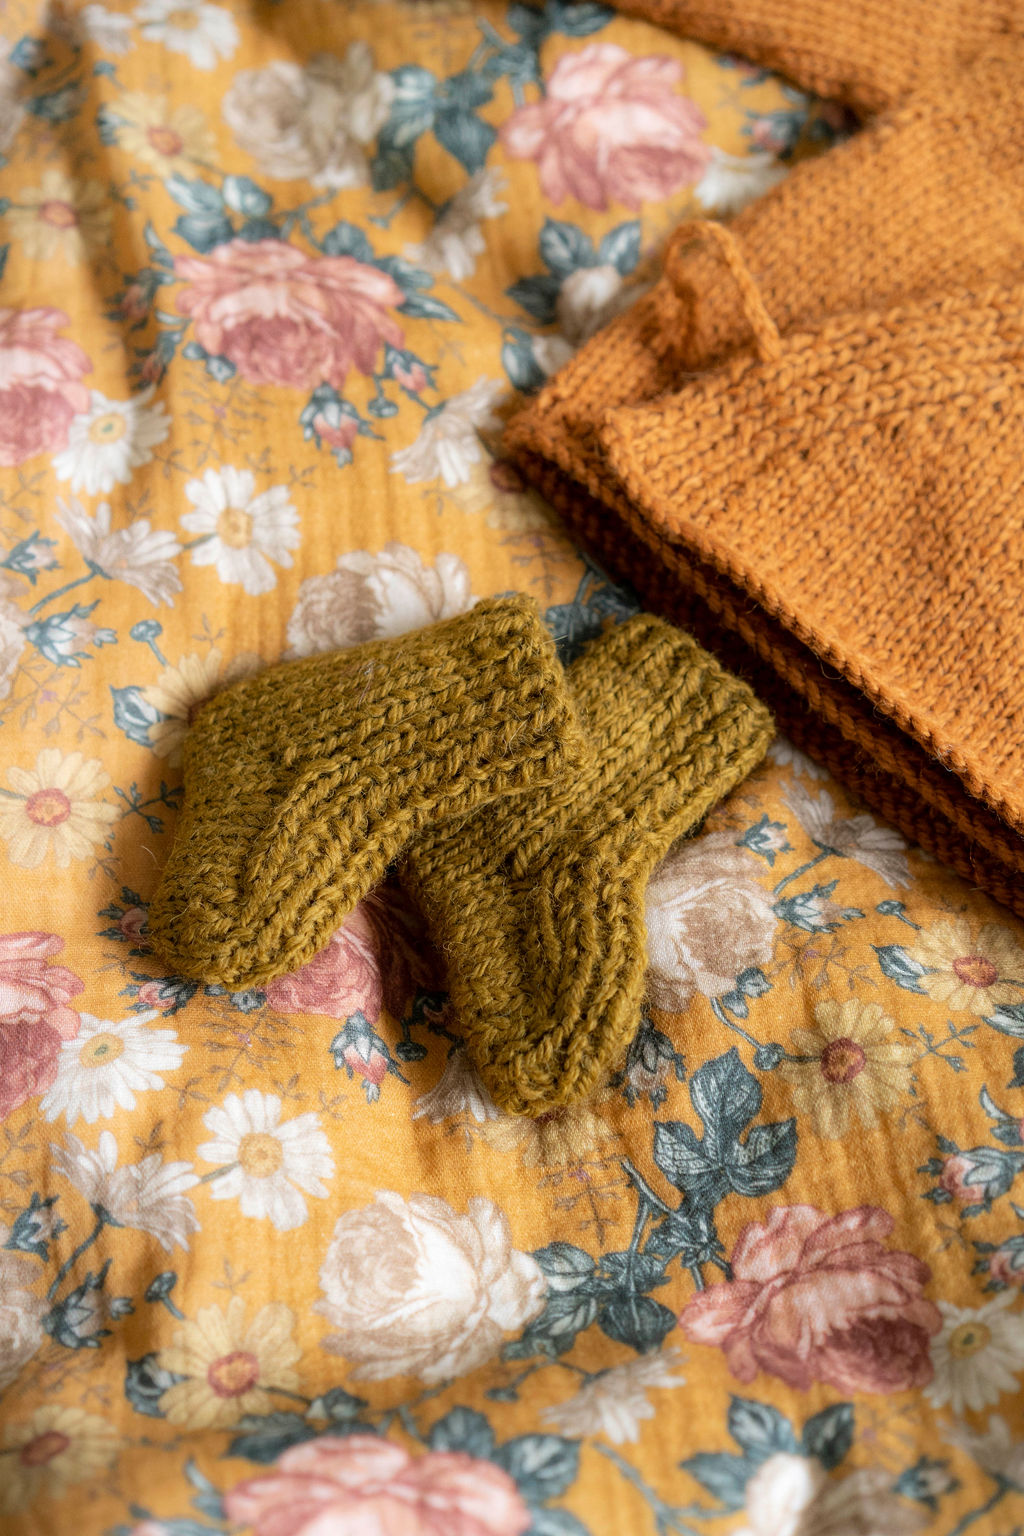 Kit layette Anny Blatt, le cadeau de naissance à tricoter